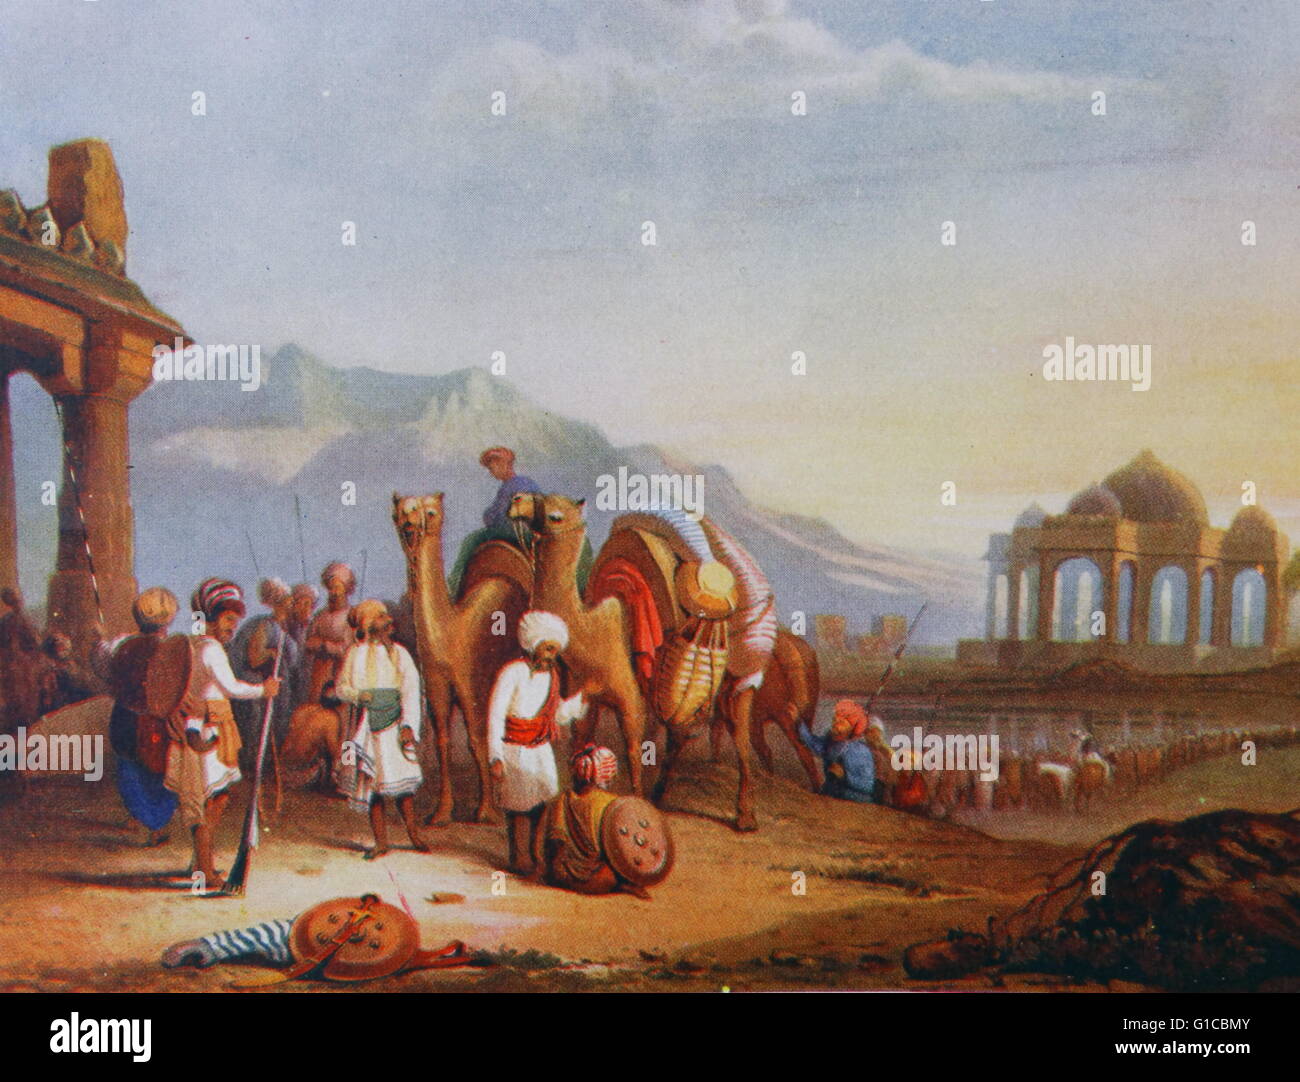 Aquatinte en couleur illustrant une scène dans Kattiawar, les voyageurs et d'escorte par Clarkson Frederick Stanfield (1794-1867) un peintre de marine anglais. Datée 1830 Banque D'Images